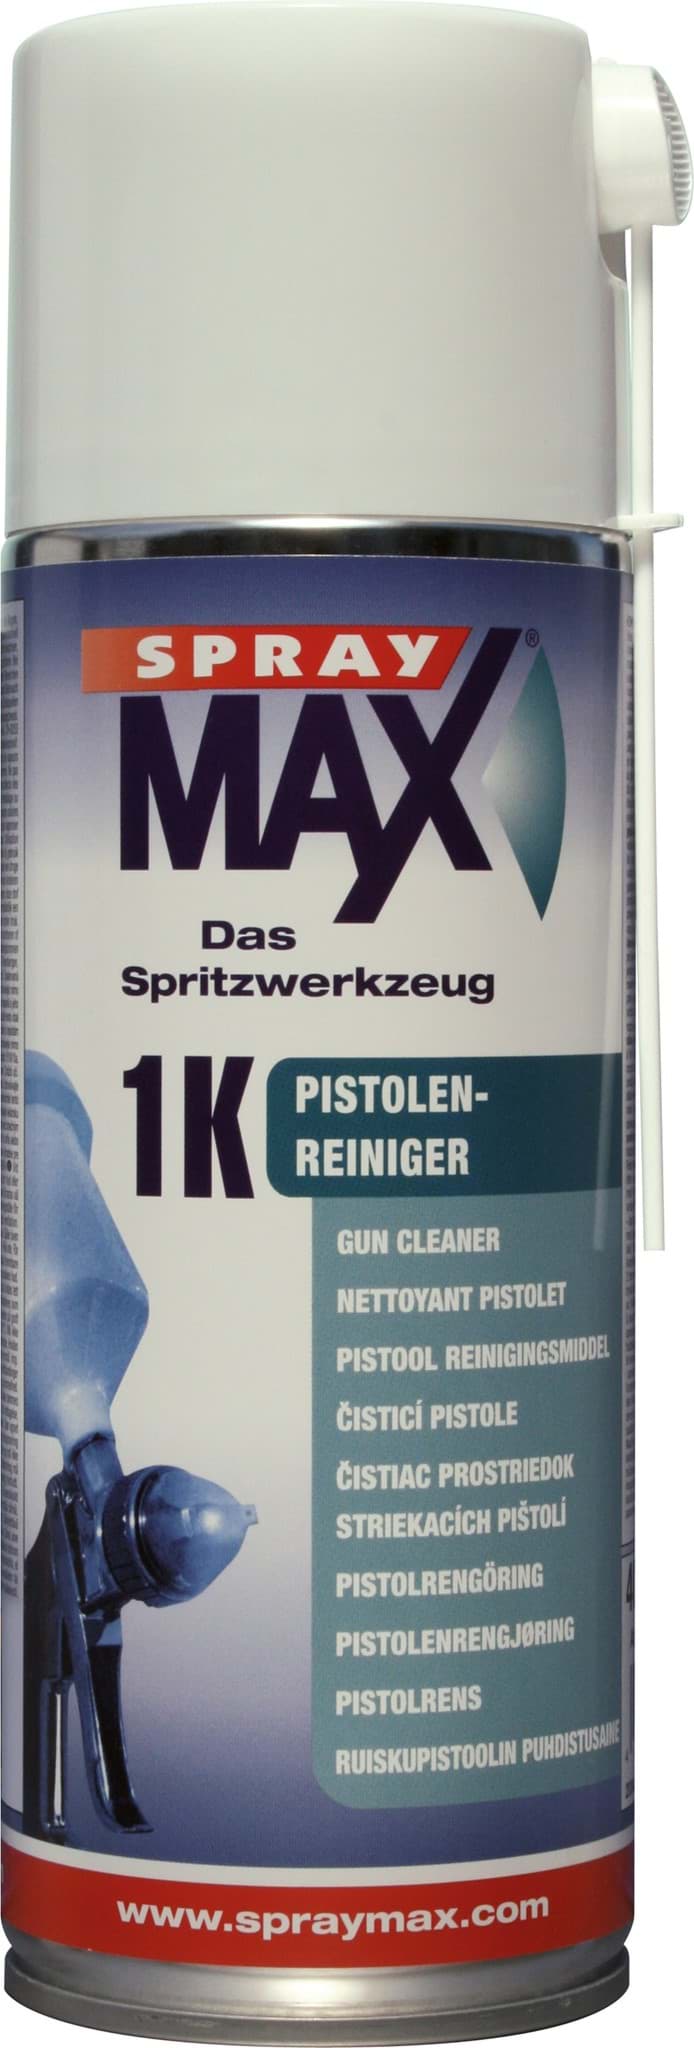 Picture of SprayMax Pistolen-Reiniger Spray 400ml